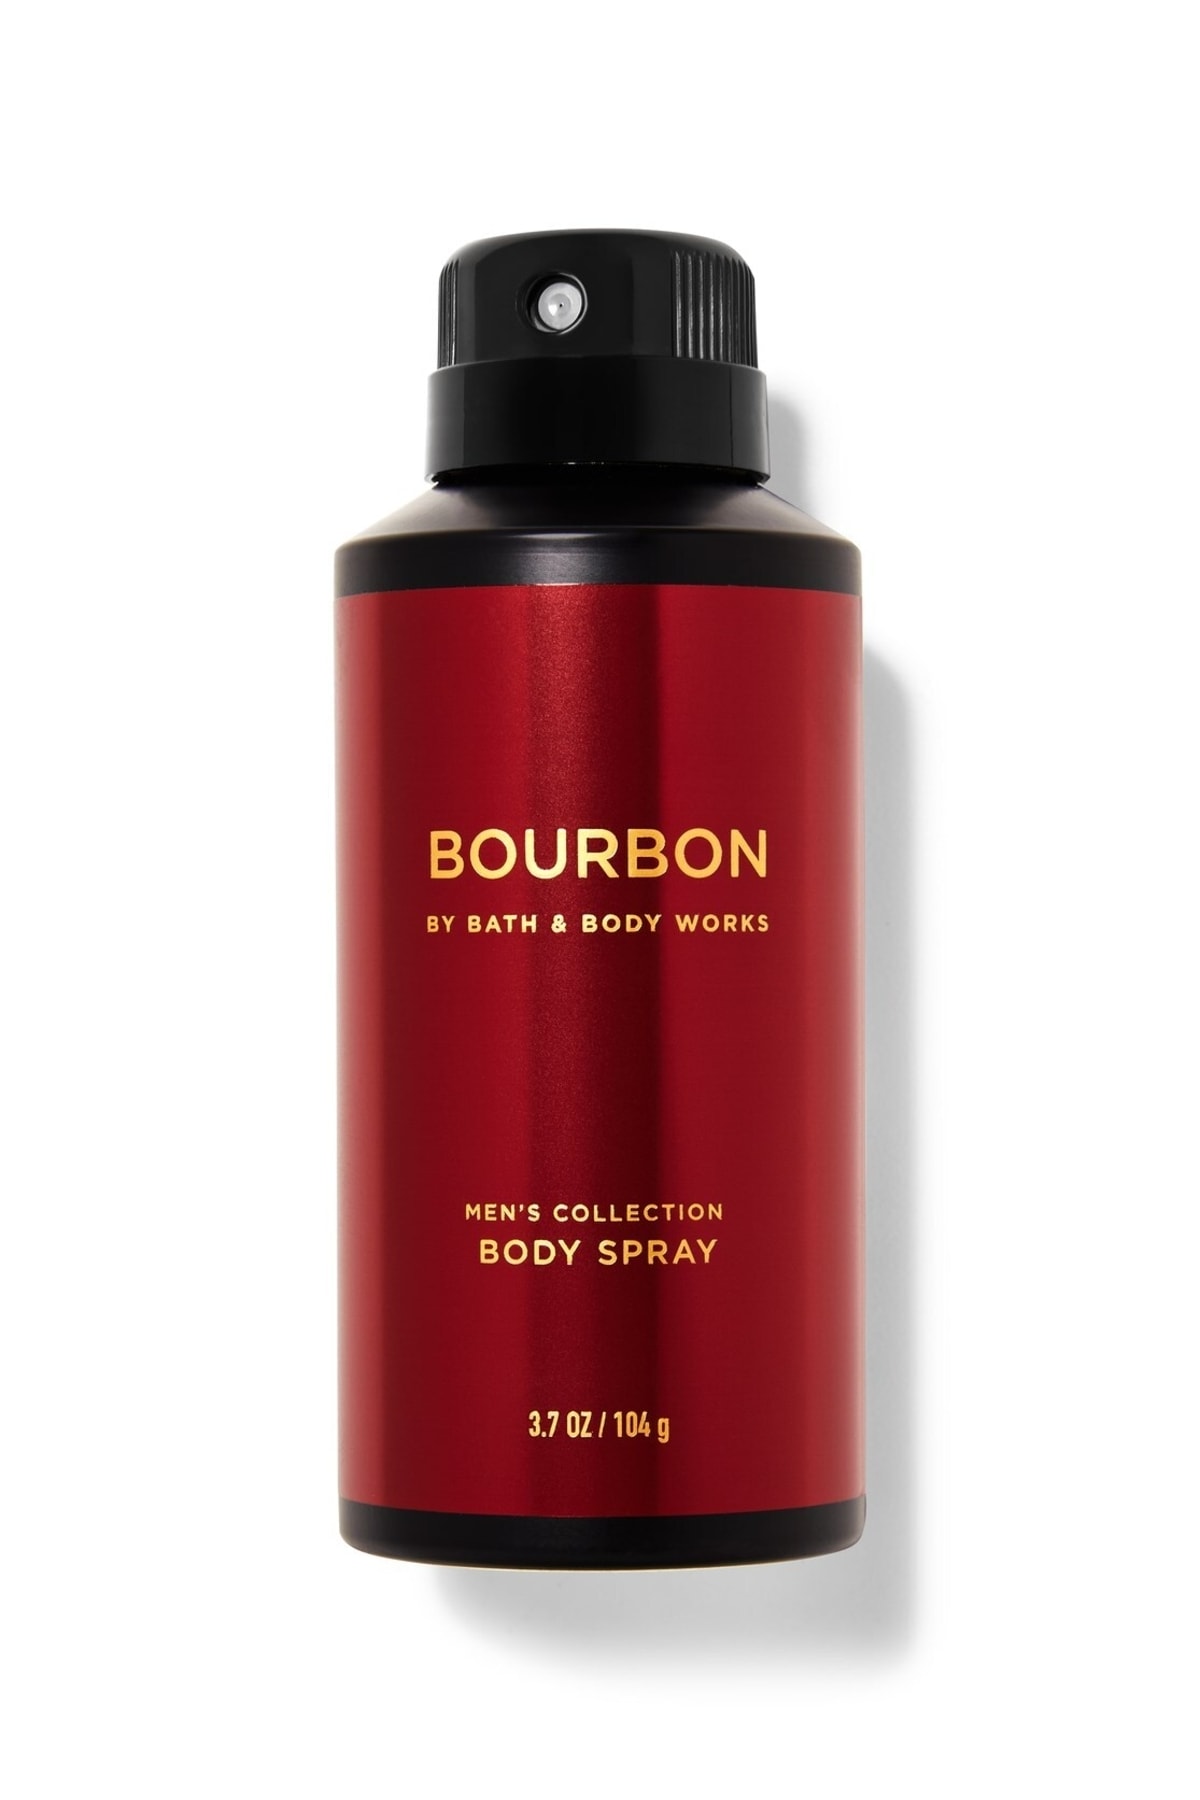 Bath & Body Works Bourbon Deodorant